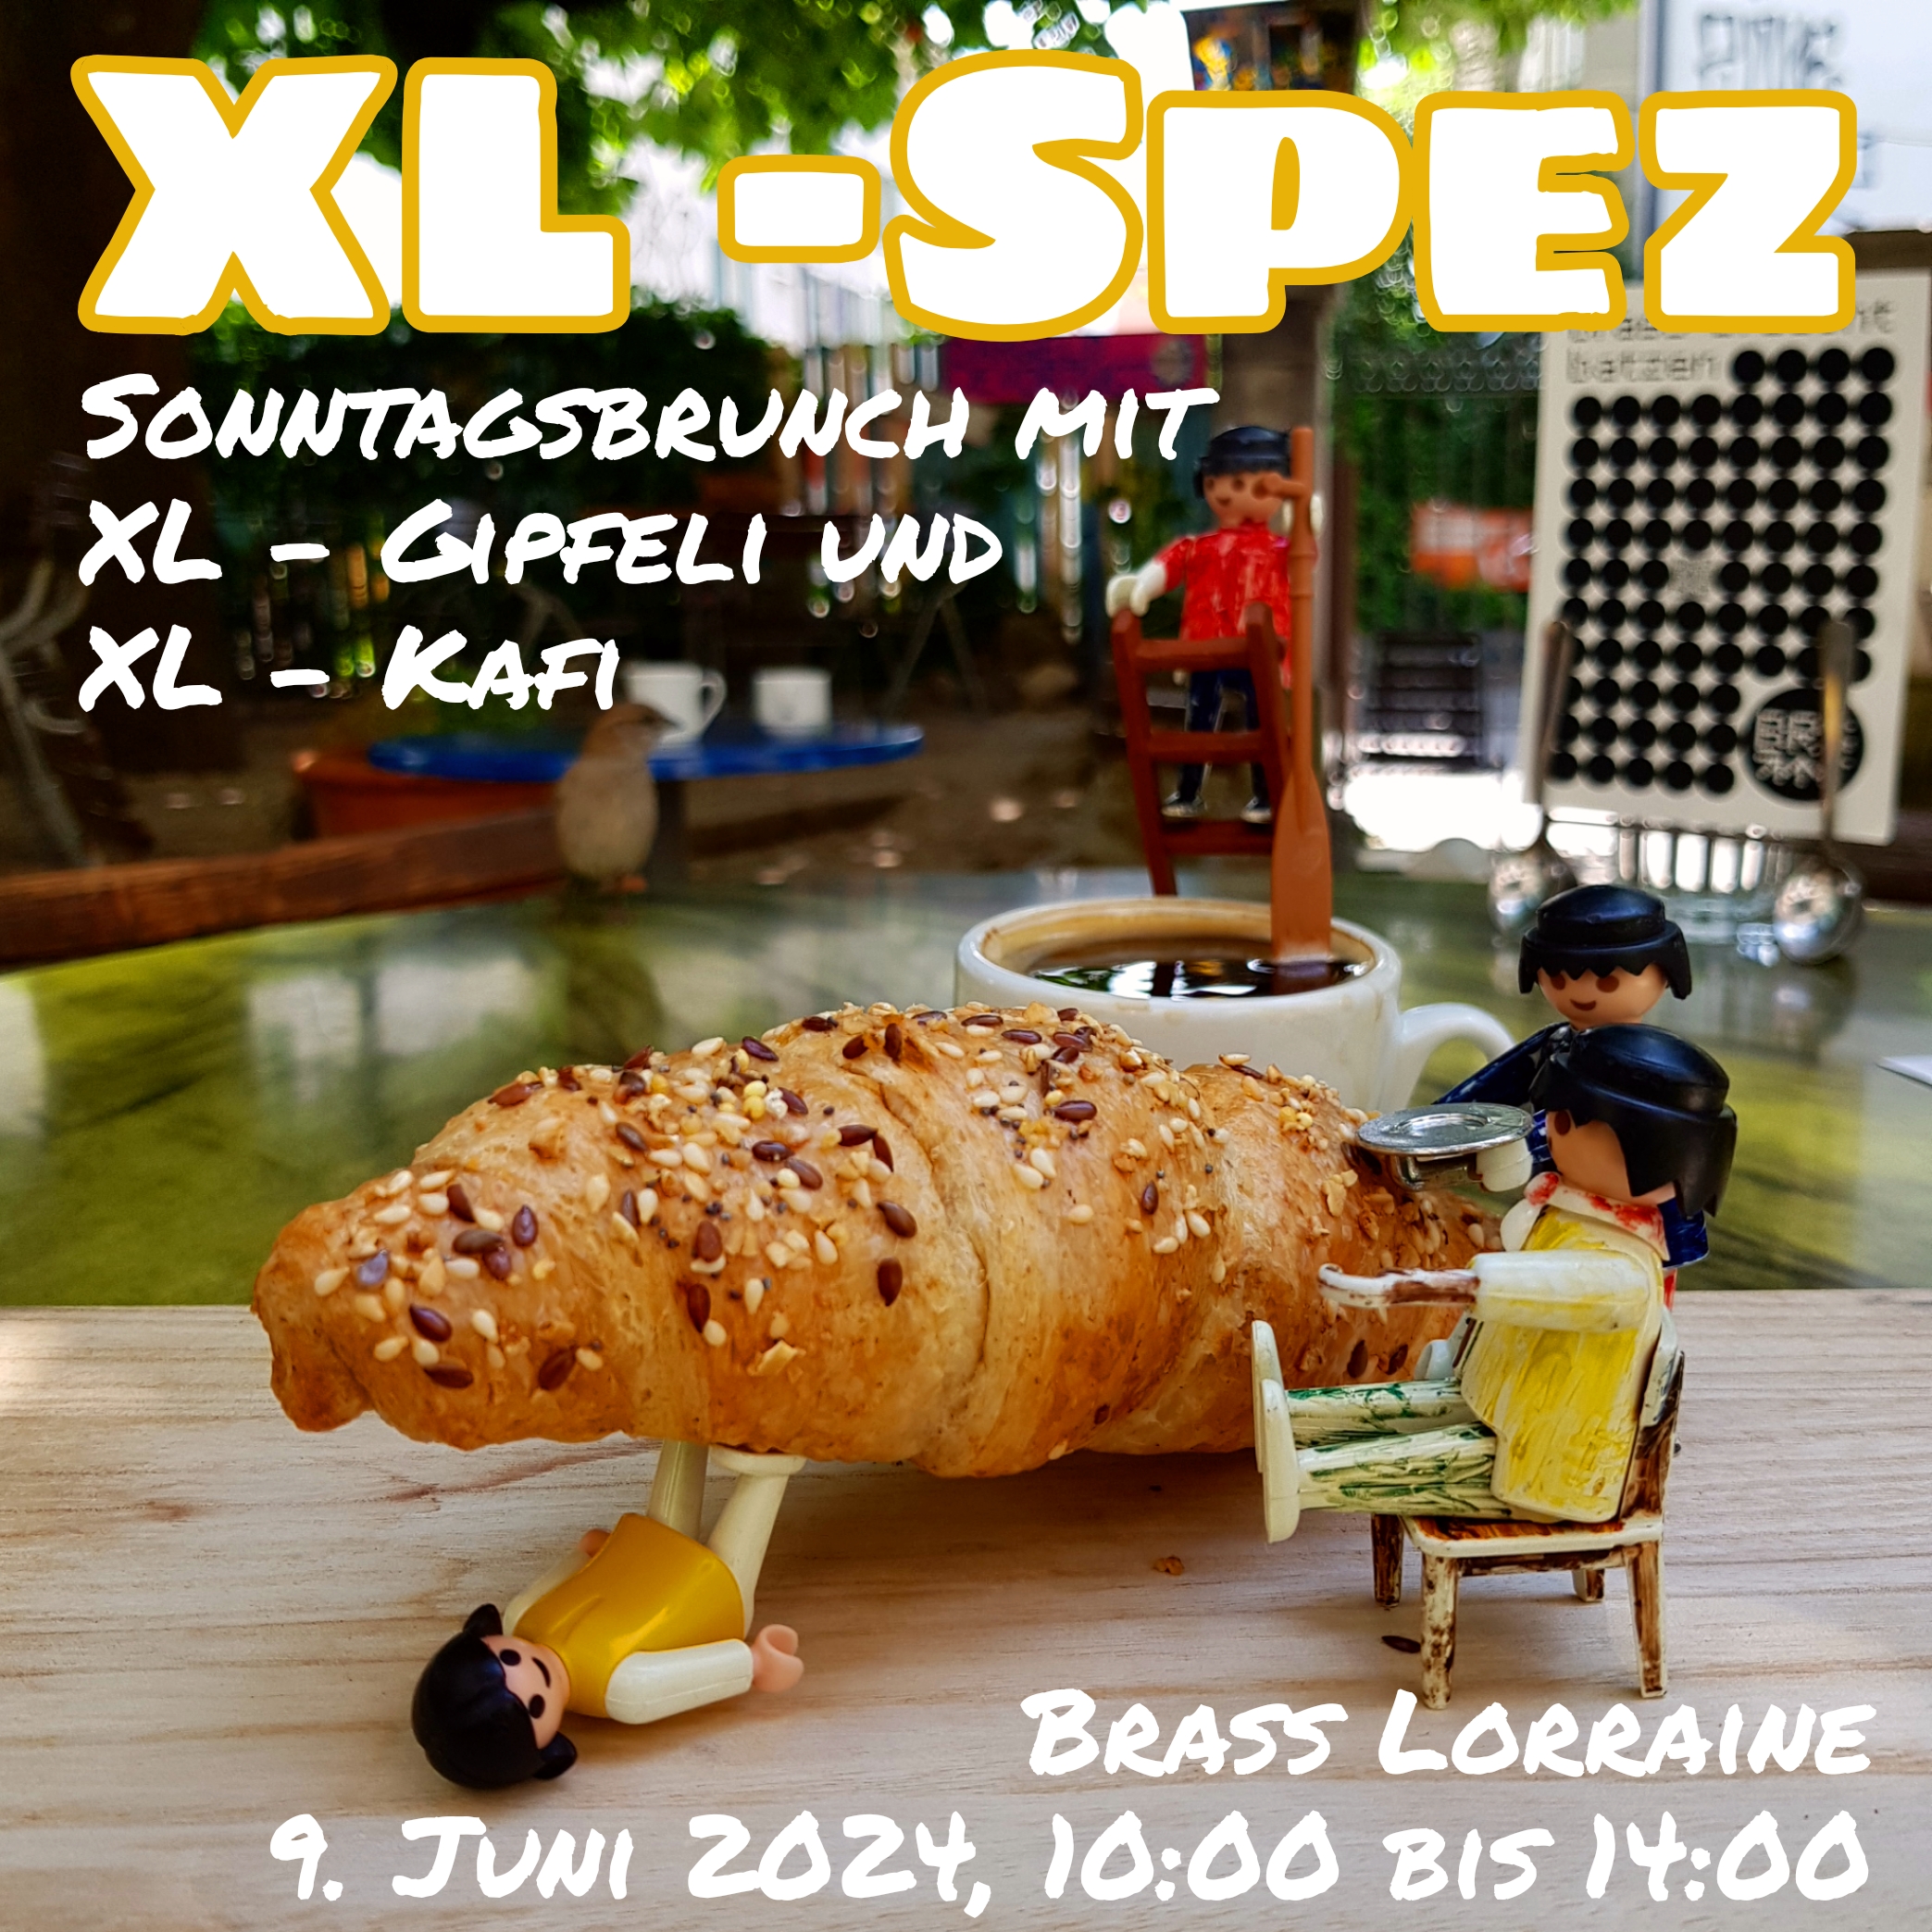 XL Spez: Sonntagsbrunch mit xl gipfeli und xl kafi. brass lorraine, 9. juni 2024, 10:00 bis 14:00 Uhr